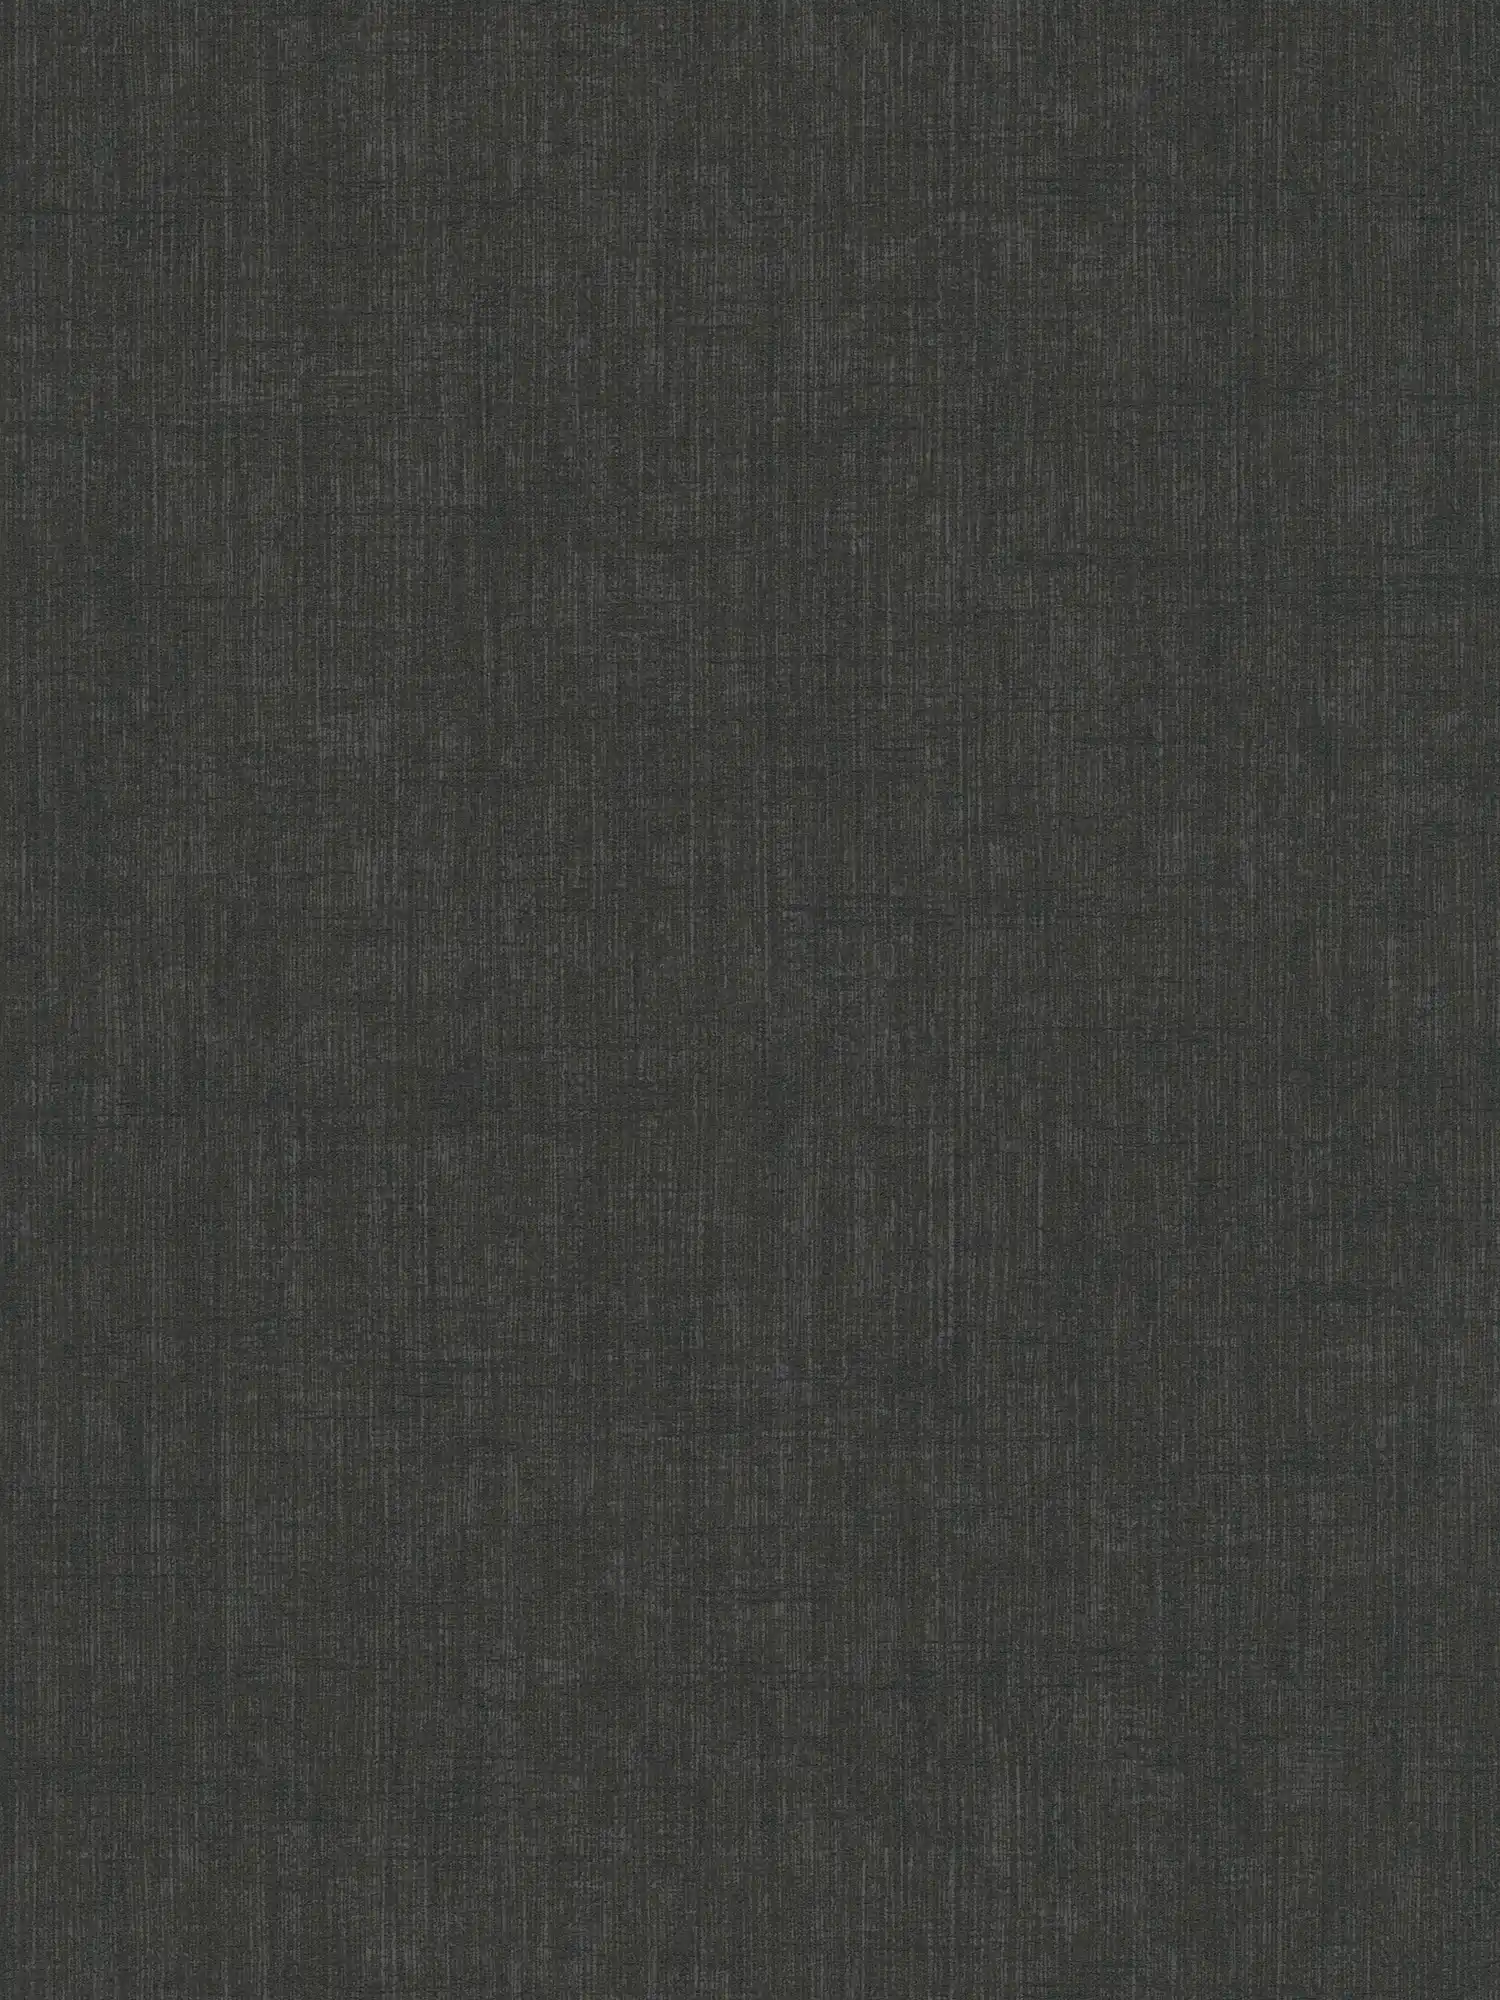 Schwarze Vliestapete mit meliertem Textil-Muster
